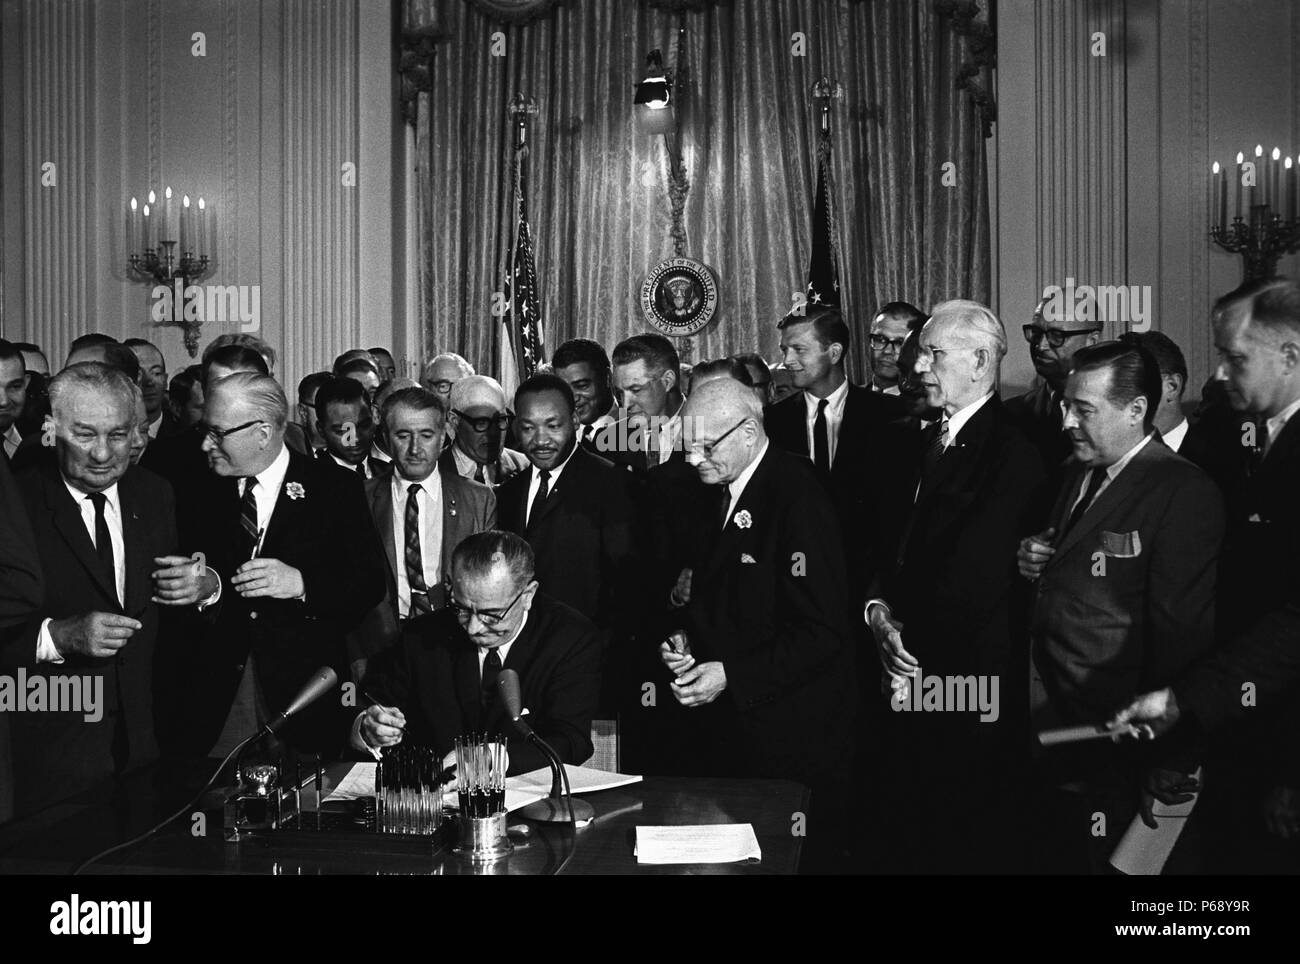 Foto von Lyndon Johnson, Präsident der Vereinigten Staaten von Amerika, Unterzeichnung Civil Rights Act. Hinter Johnson ist Martin Luther King Jnr. Vom 1964 Stockfoto